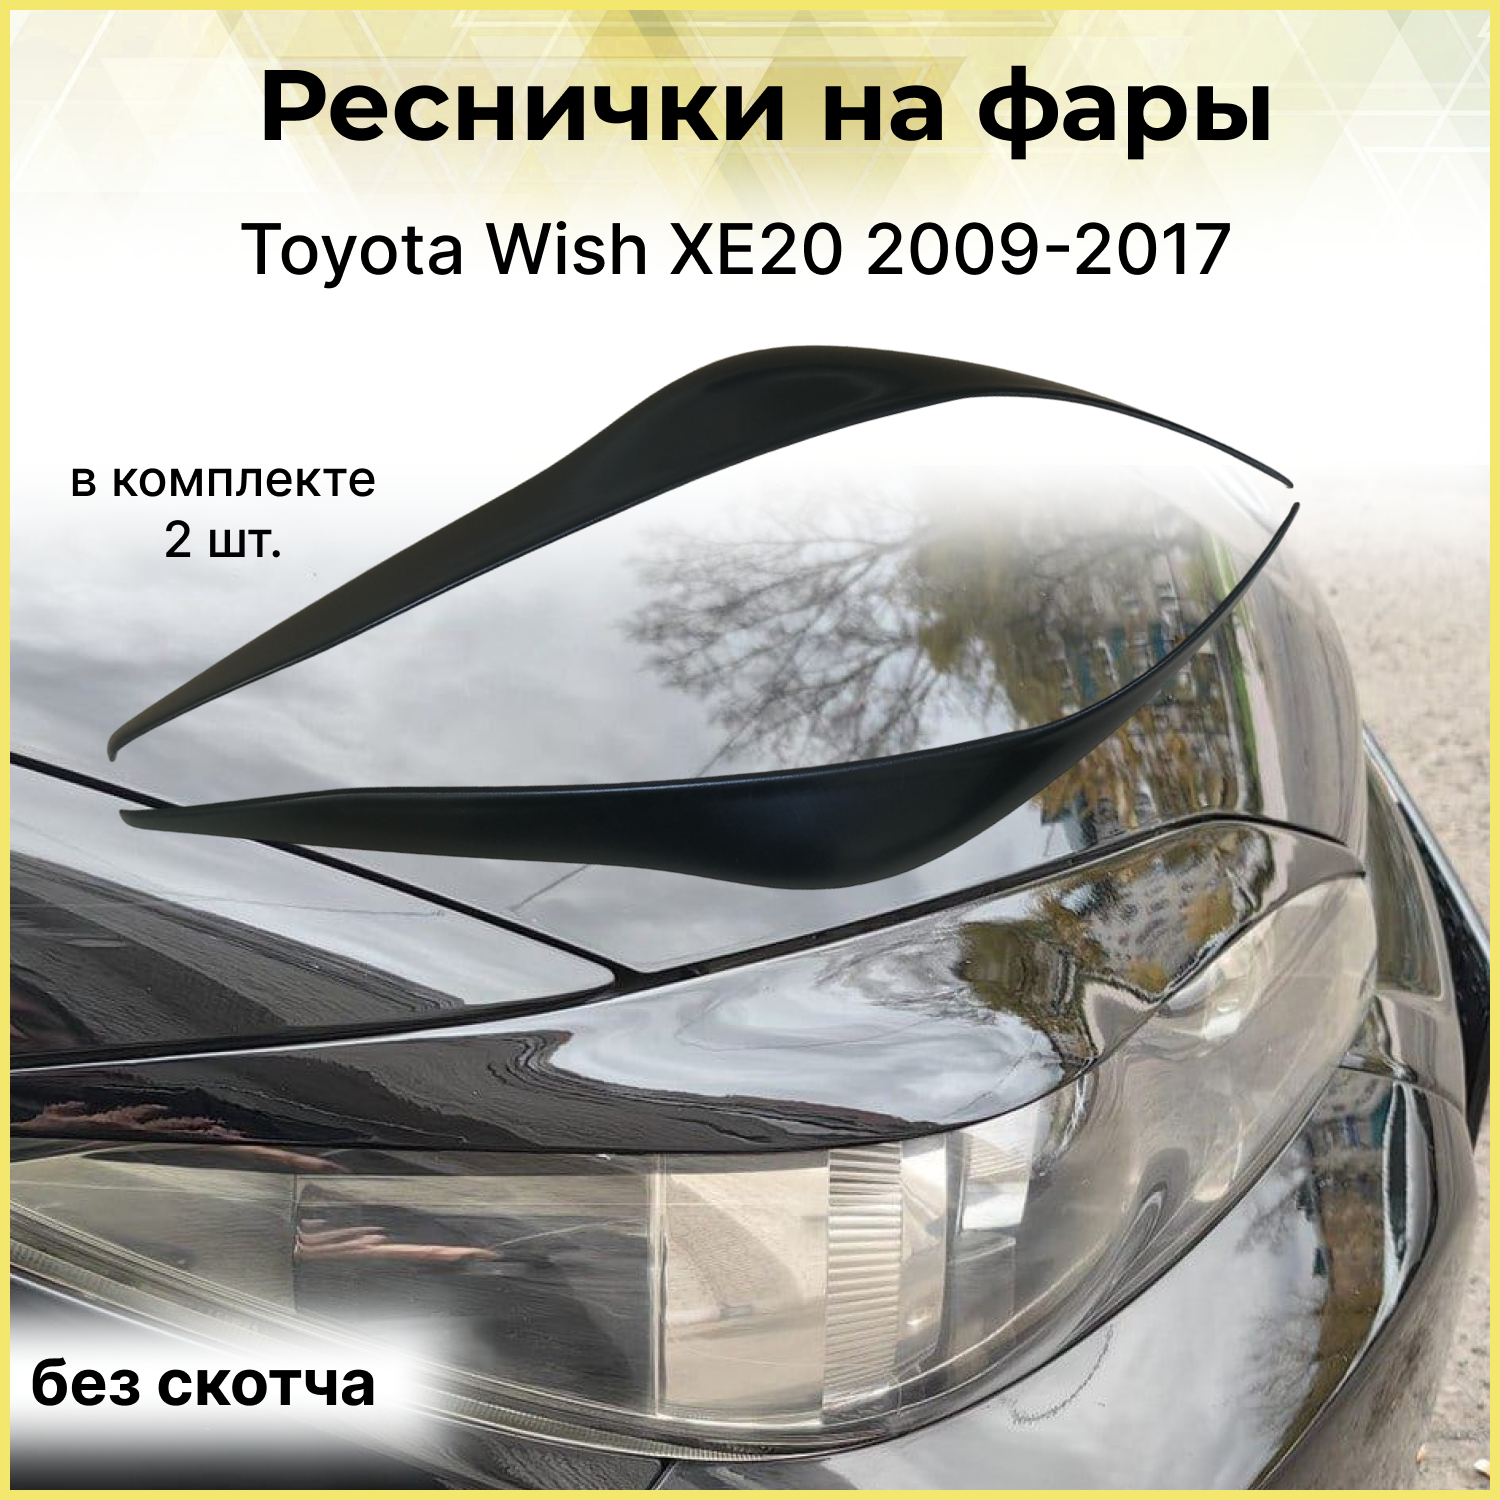 Реснички на фары Toyota Wish XE20 2009-2017